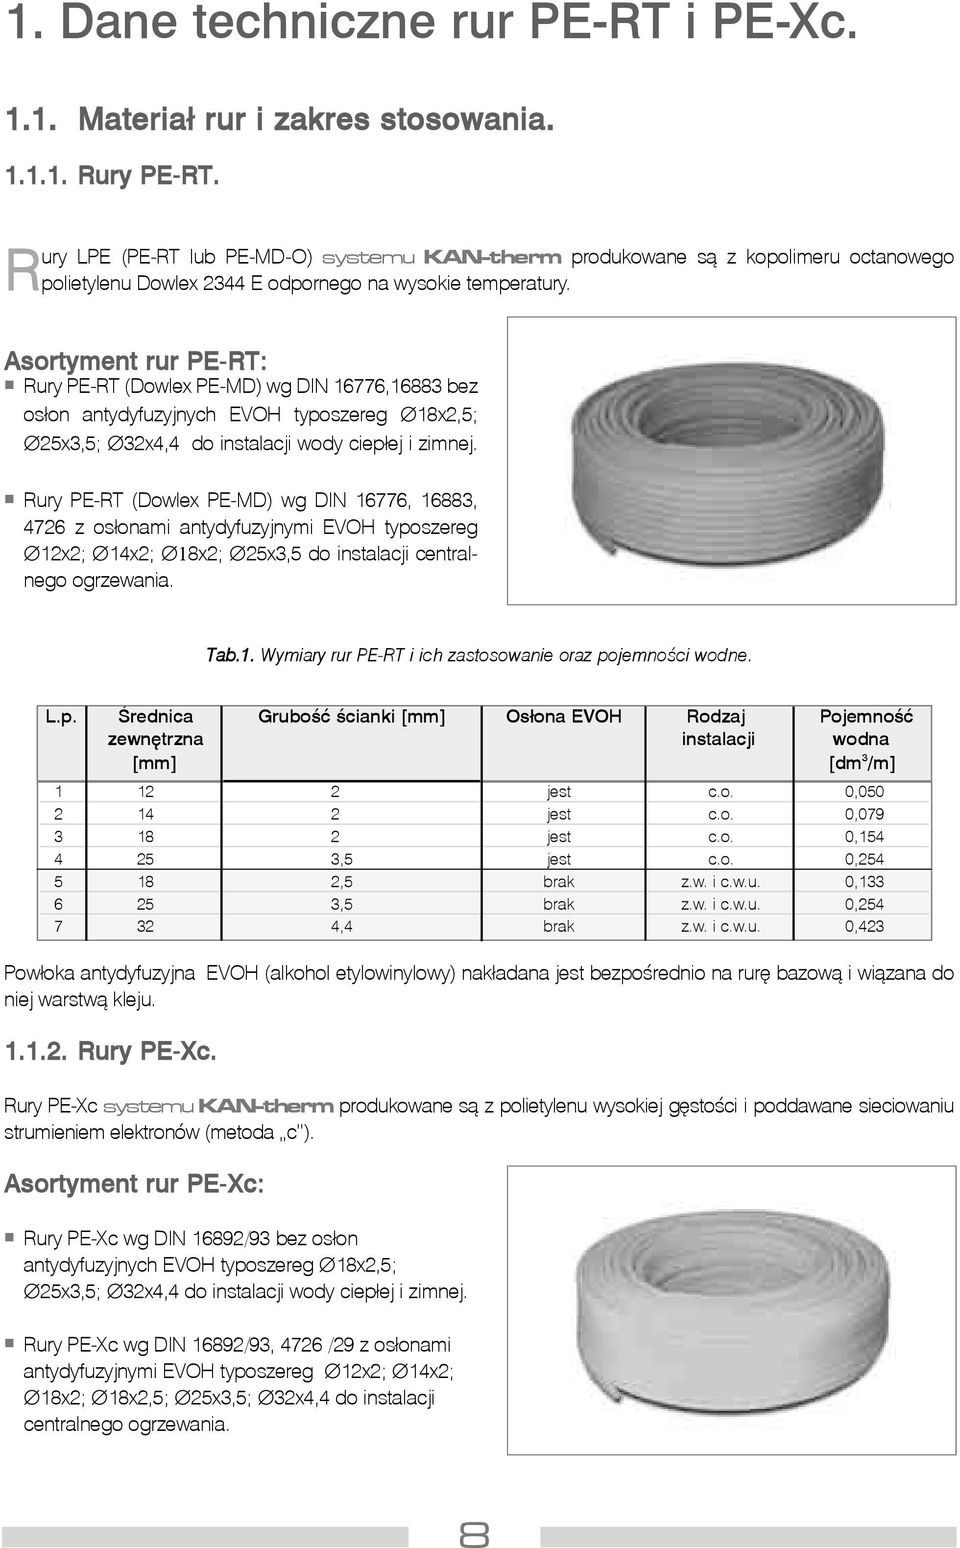 Asortyment rur PE-RT: Rury PE-RT (Dowlex PE-MD) wg DIN 16776,16883 bez os³on antydyfuzyjnych EVOH typoszereg 18x2,5; 25x3,5; 32x4,4 do instalacji wody ciep³ej i zimnej.